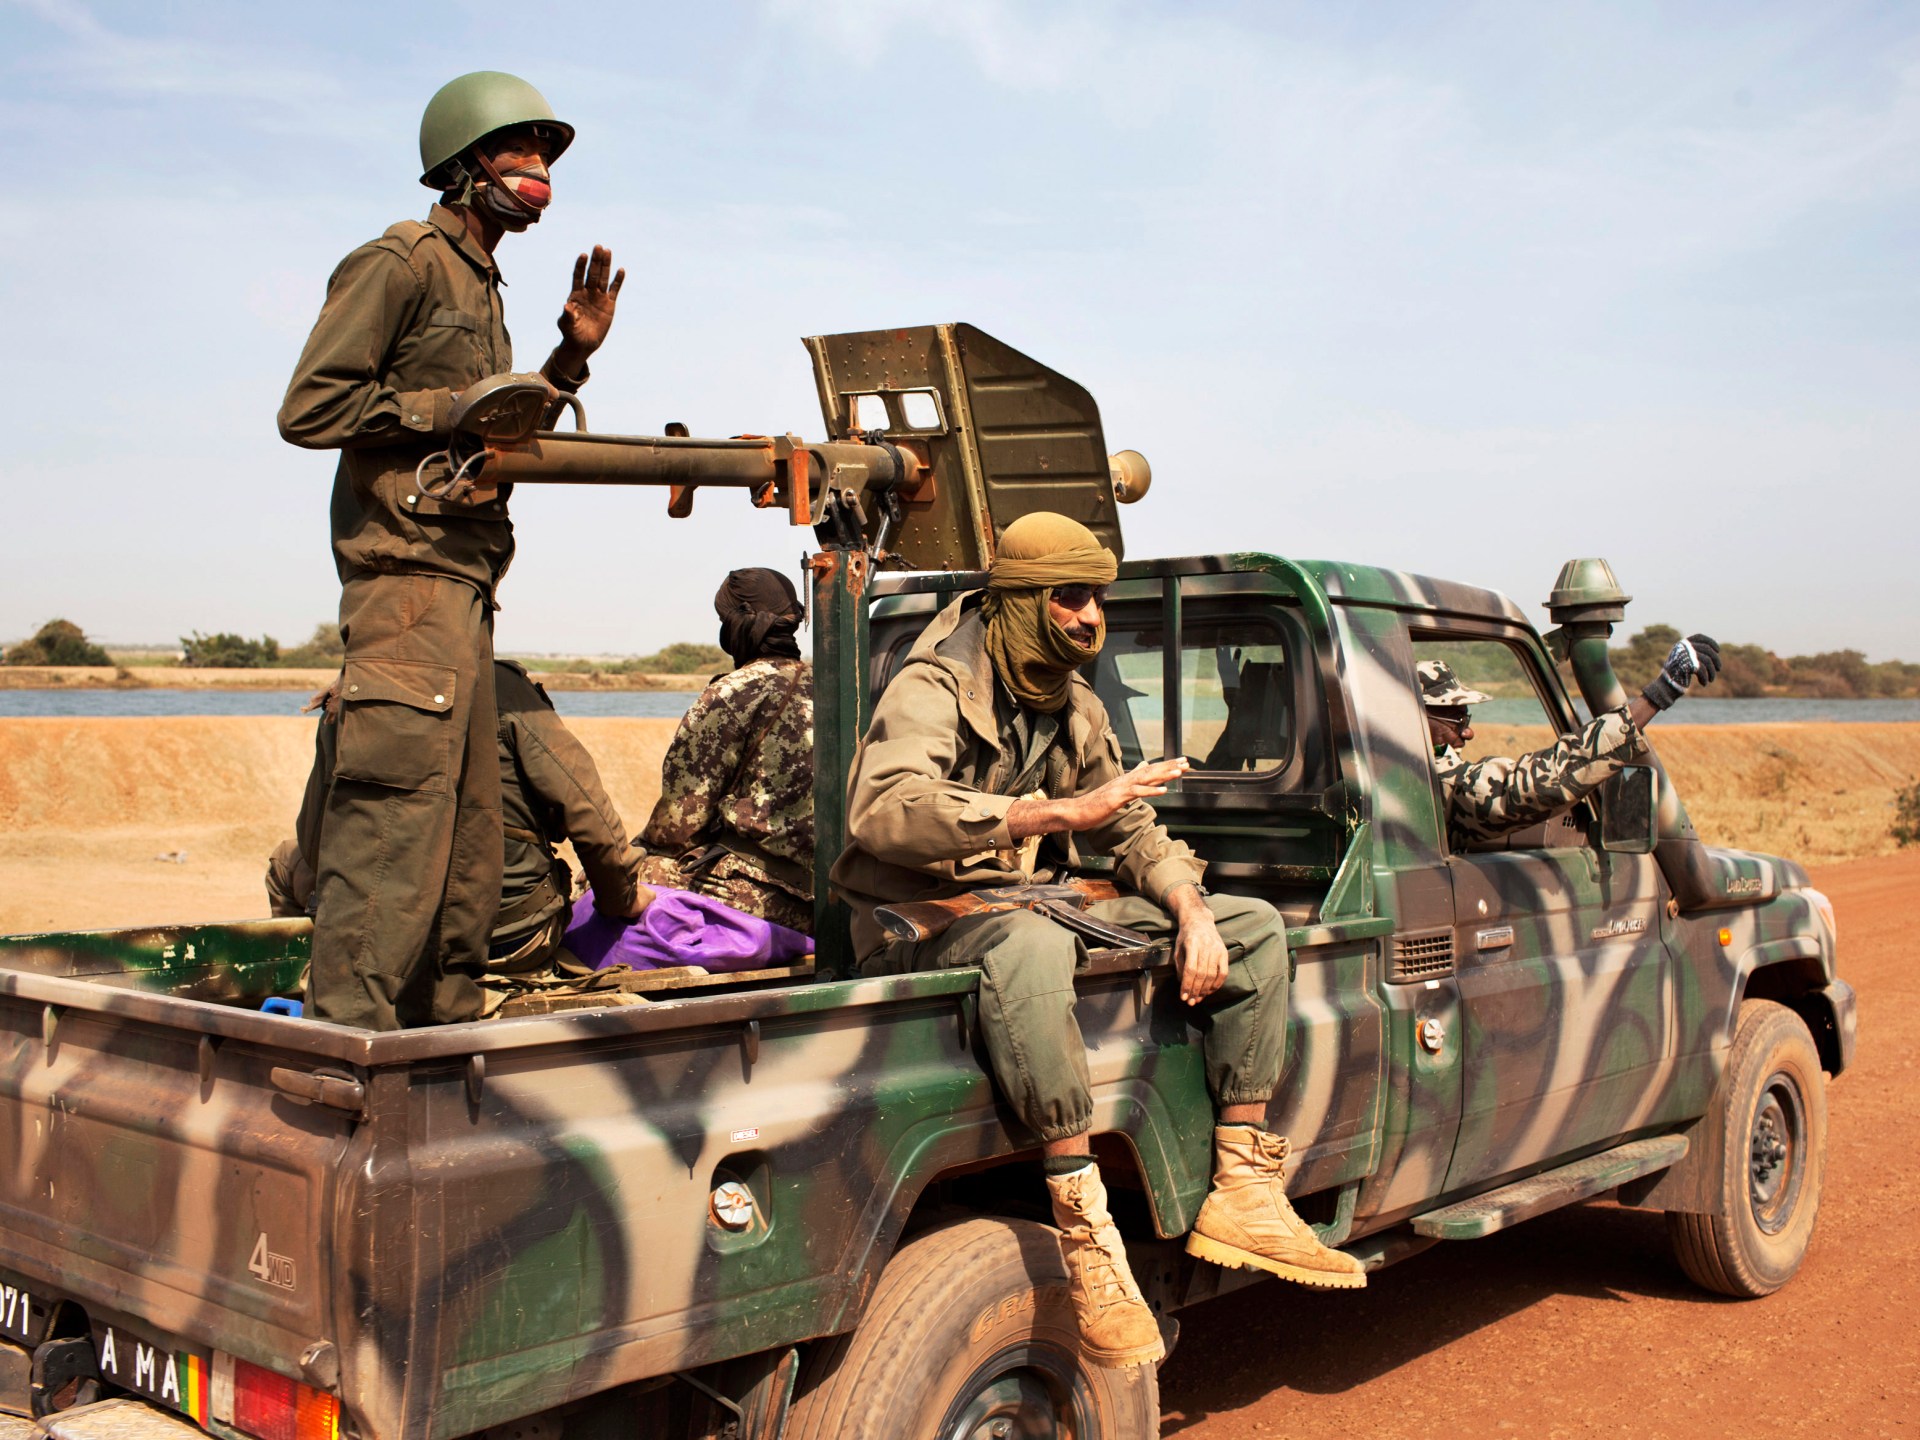 الطوارق يعلنون حصارا على محاور طرق رئيسية شمال مالي | أخبار – البوكس نيوز